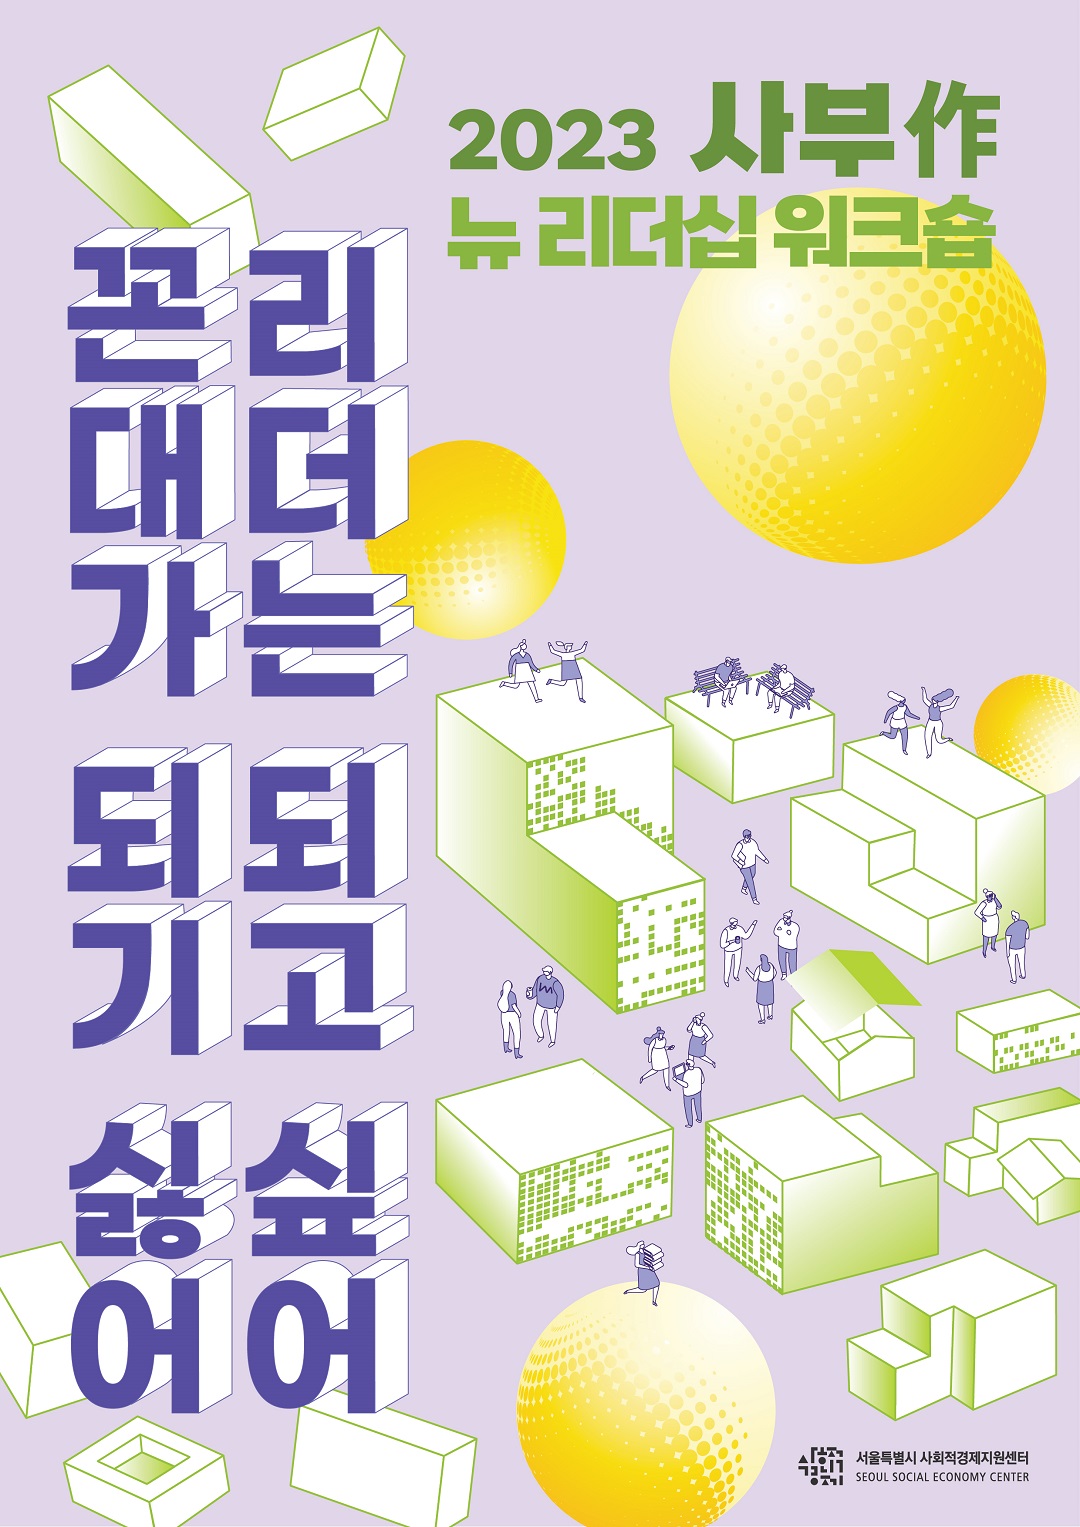 (크기조정) 포스터1_2023 사부작_뉴 리더십 워크숍_서울사경센터.jpg